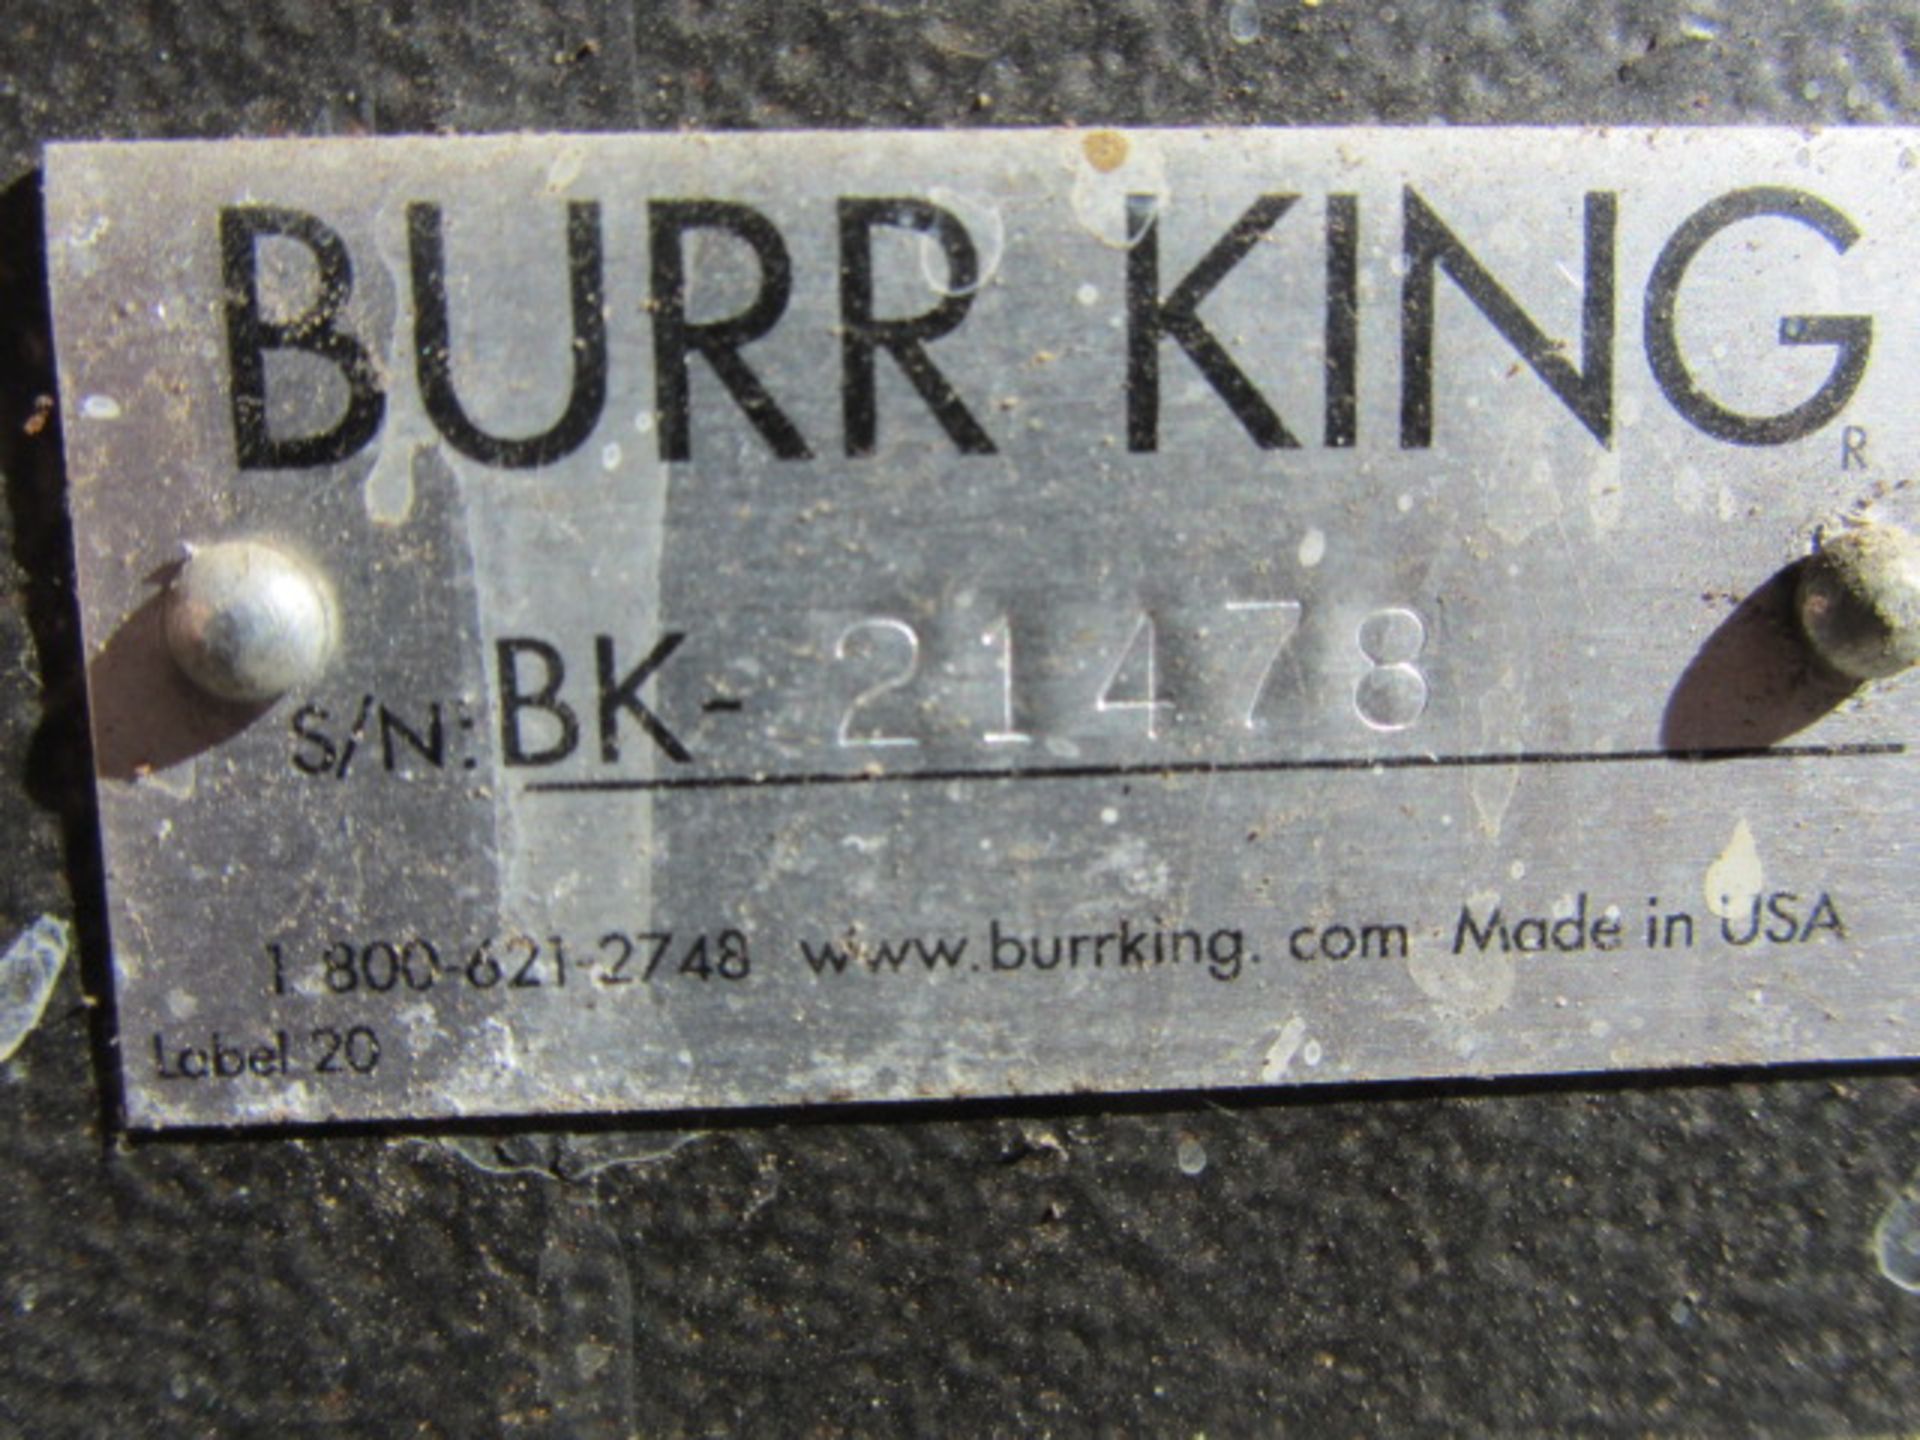 Burr King Vibra King 25 Vibratory Finisher - Image 3 of 3